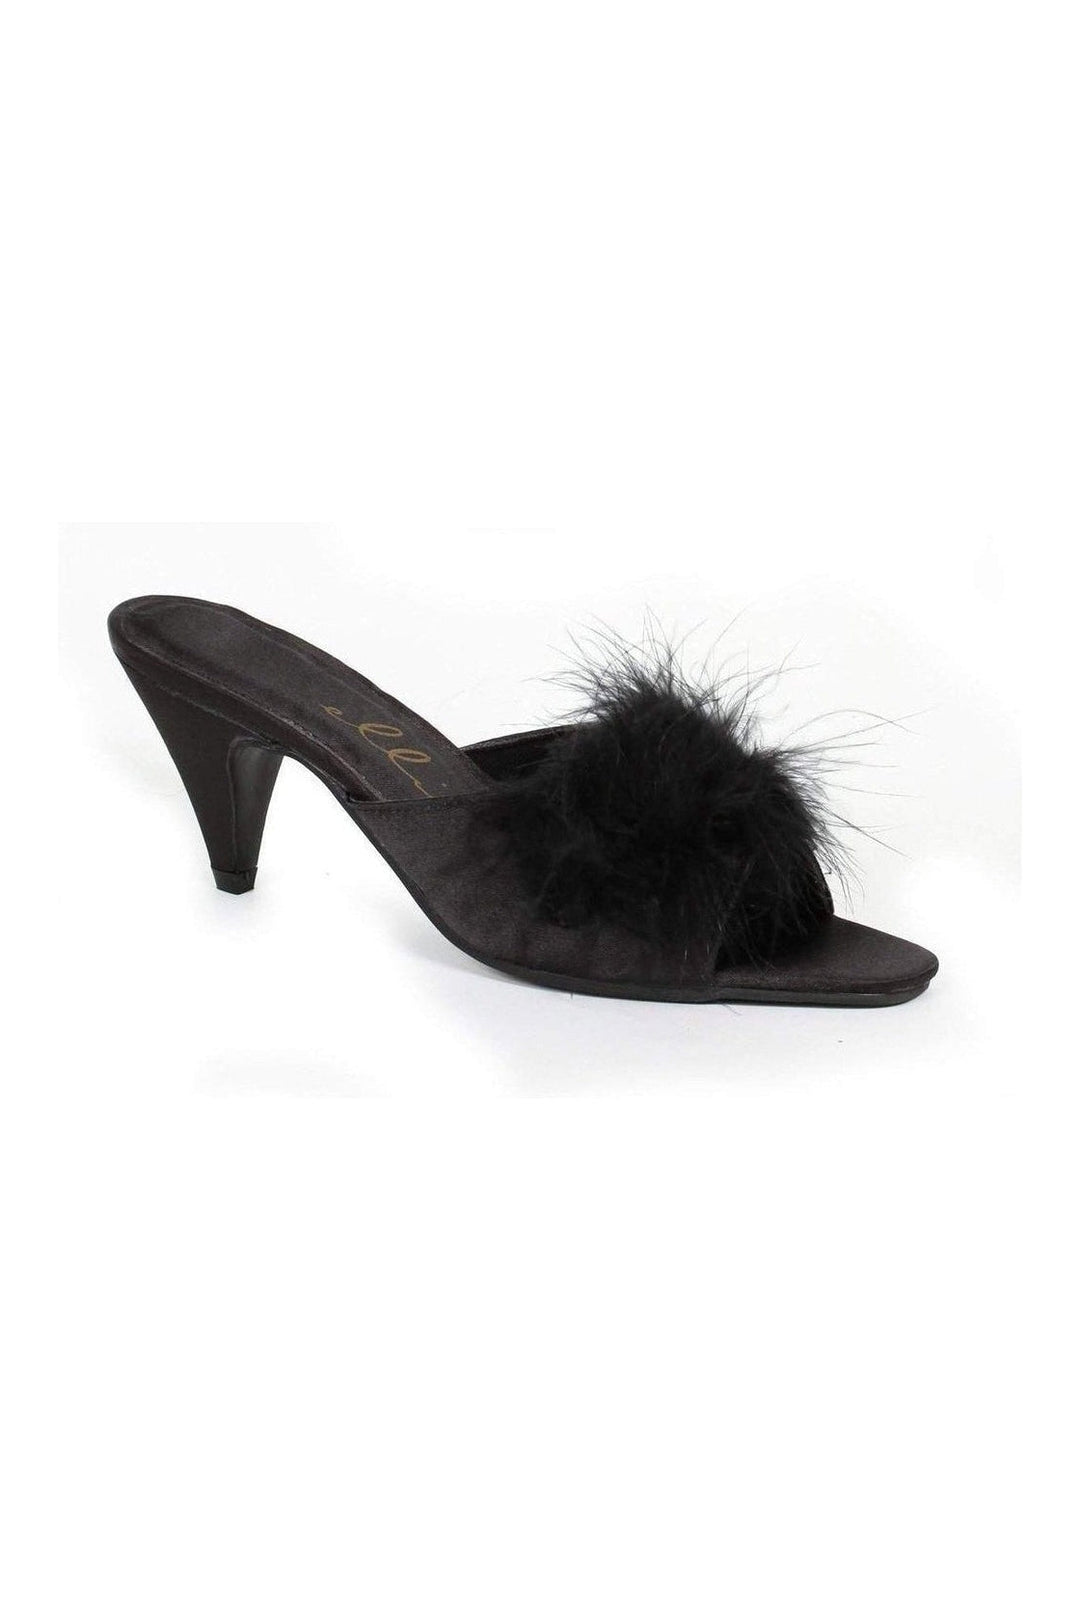 PHOEBE Marabou | Black Patent-Ellie Shoes-SEXYSHOES.COM